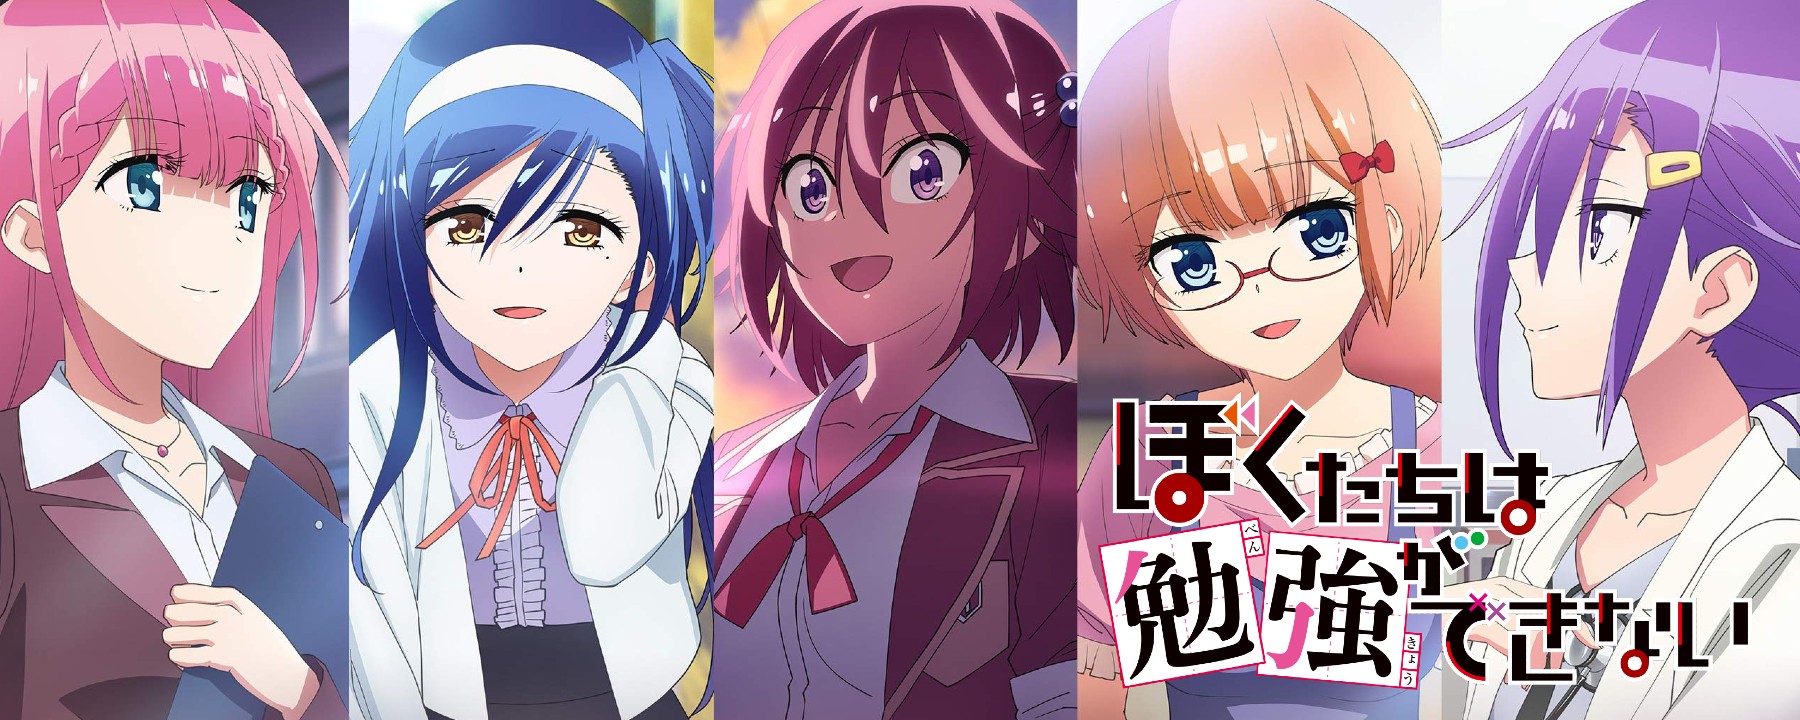 Bokutachi wa Benkyou ga Dekinai! Season 2 - Episode 13 discussion - FINAL :  r/anime